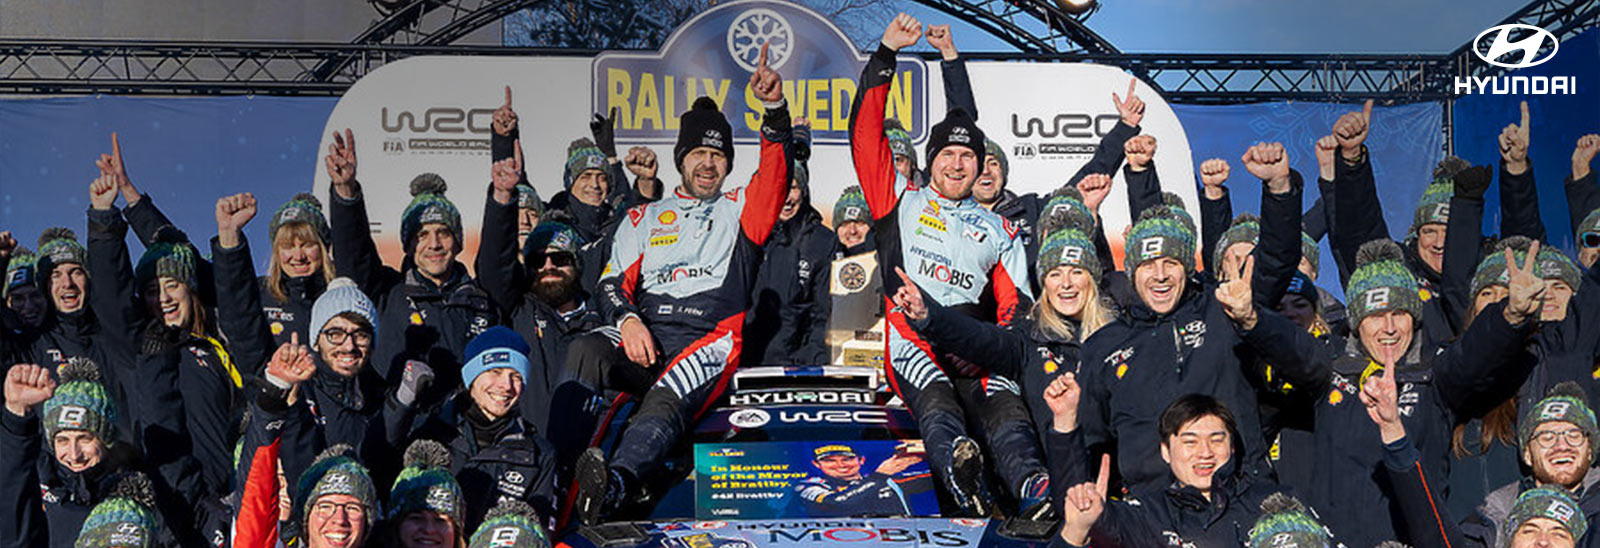 Dulce éxito sueco en el WRC de Hyundai